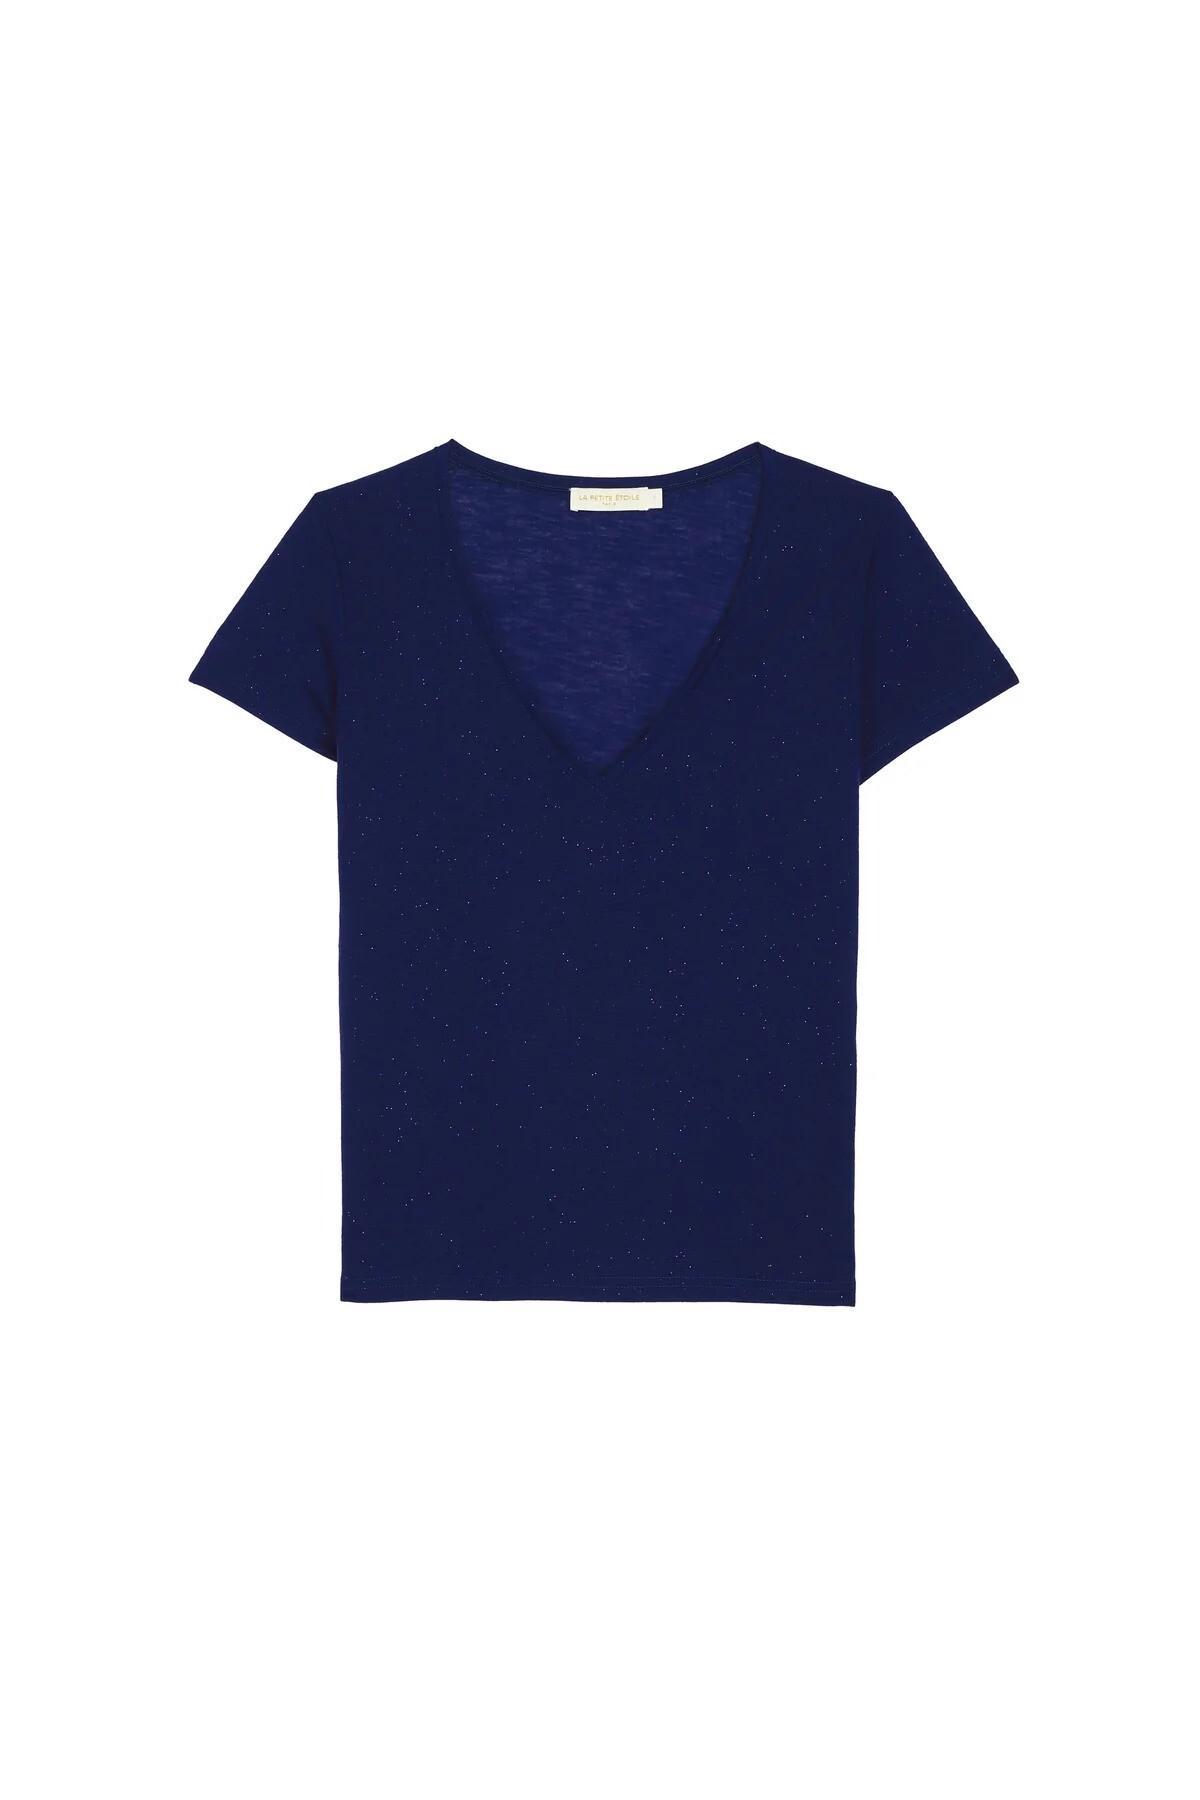 Camiseta Starter Estrela Azul - ecko